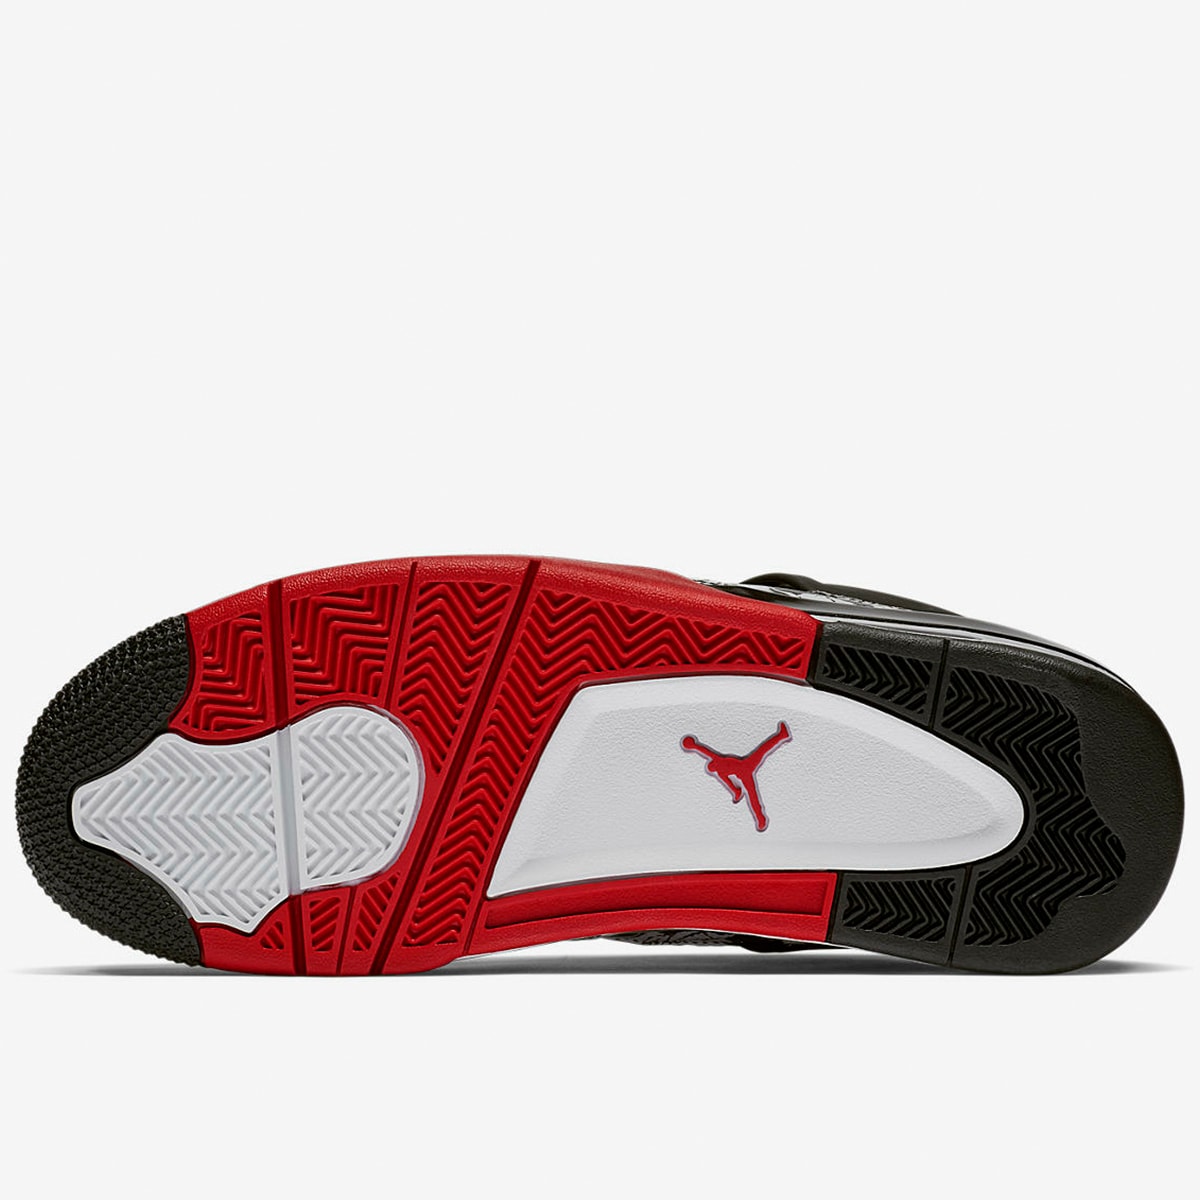 Air Jordan 4 Retro (Black & Fire Red) | END. Launches